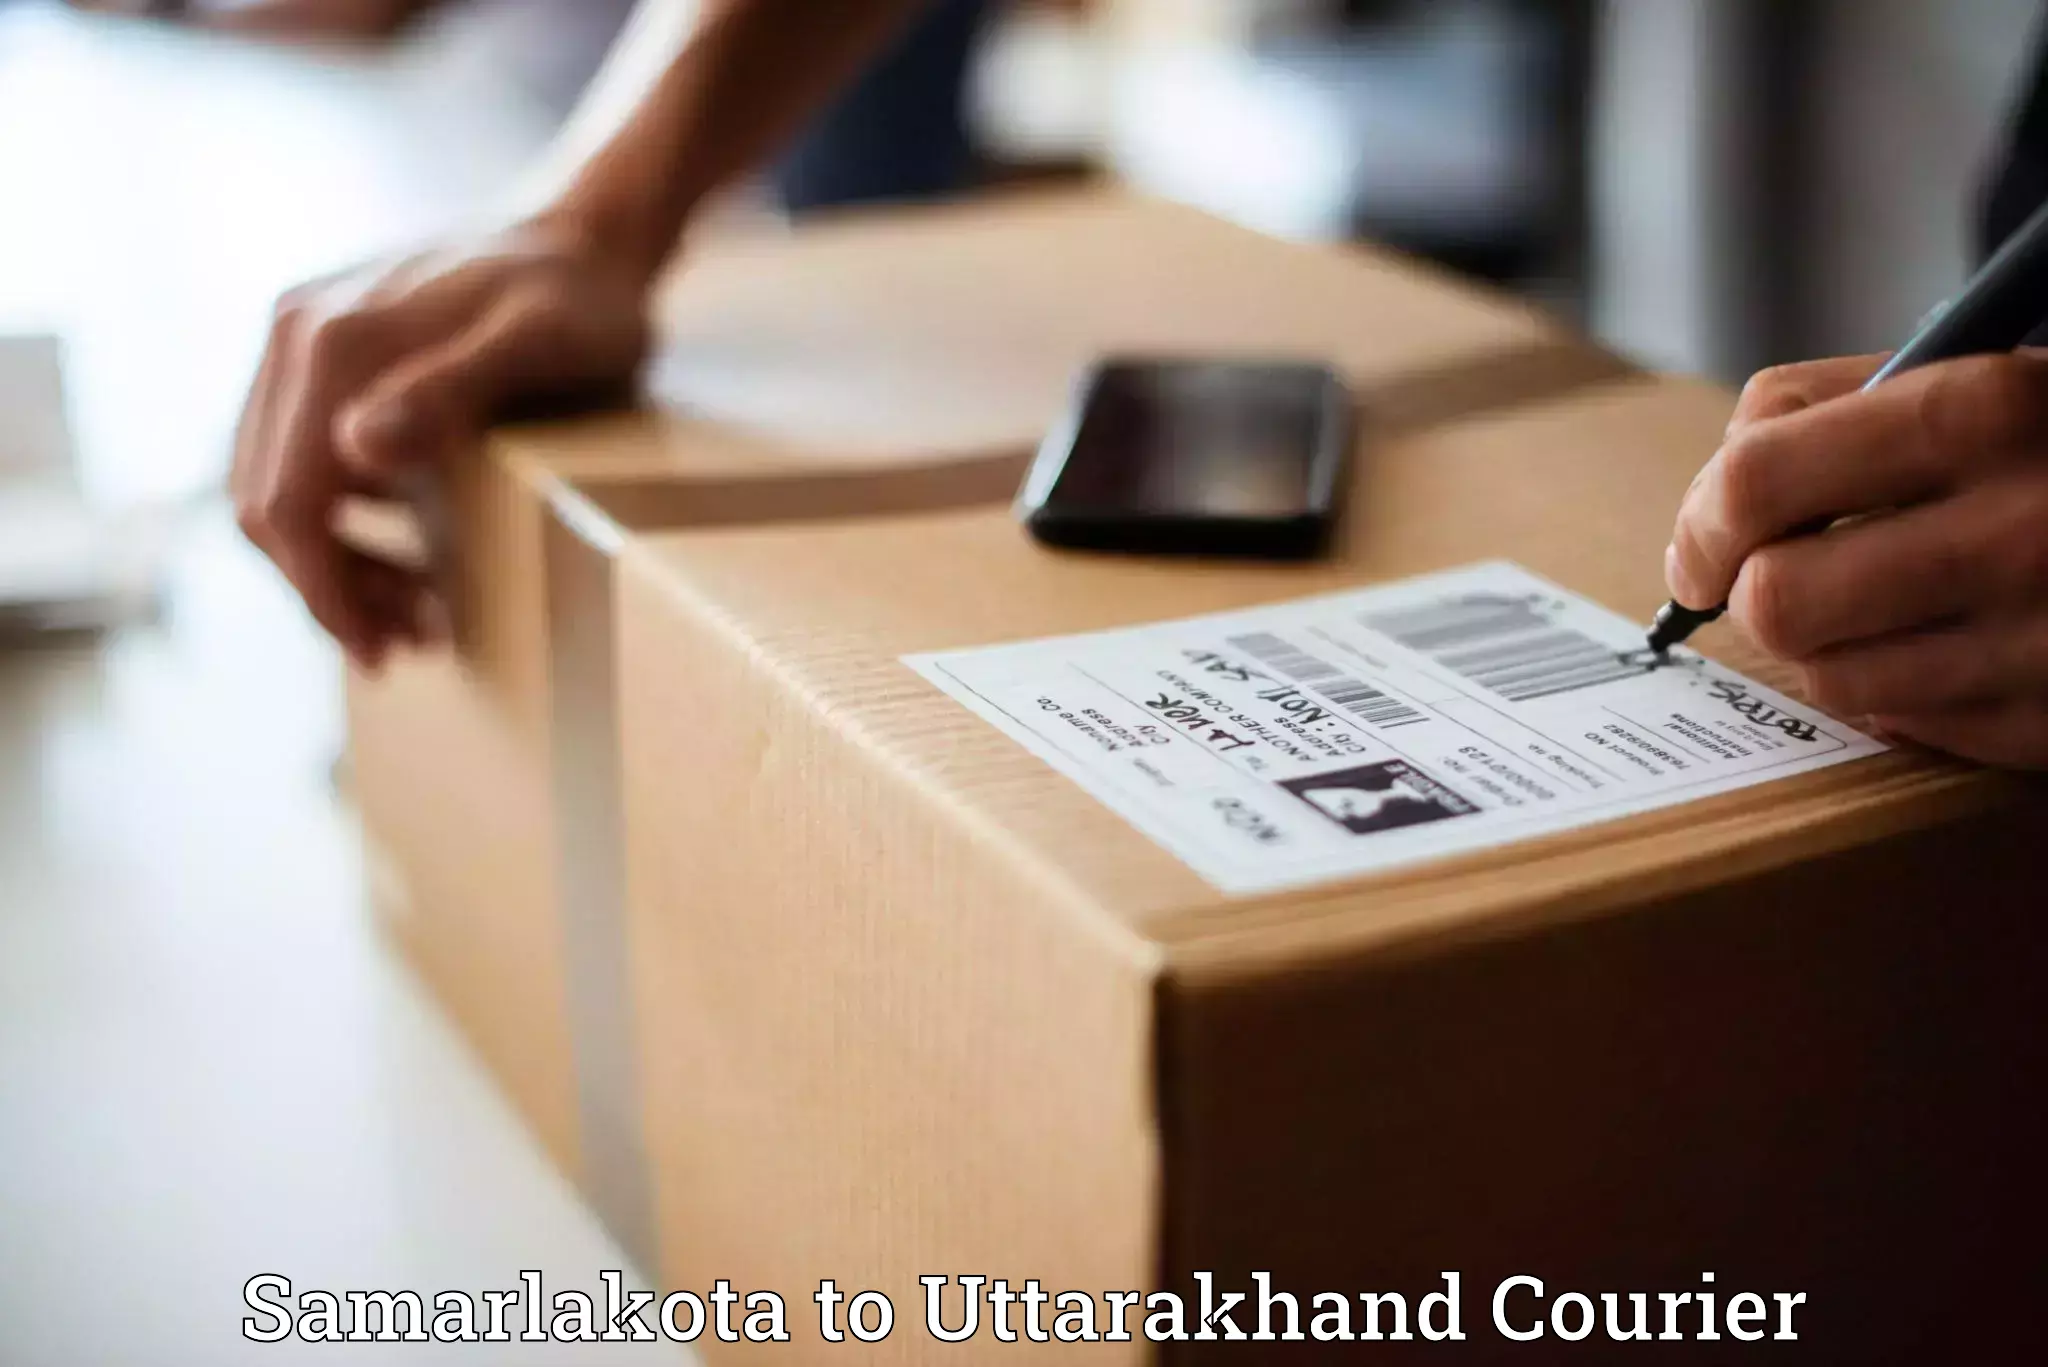 Urban courier service Samarlakota to Bhagwanpur